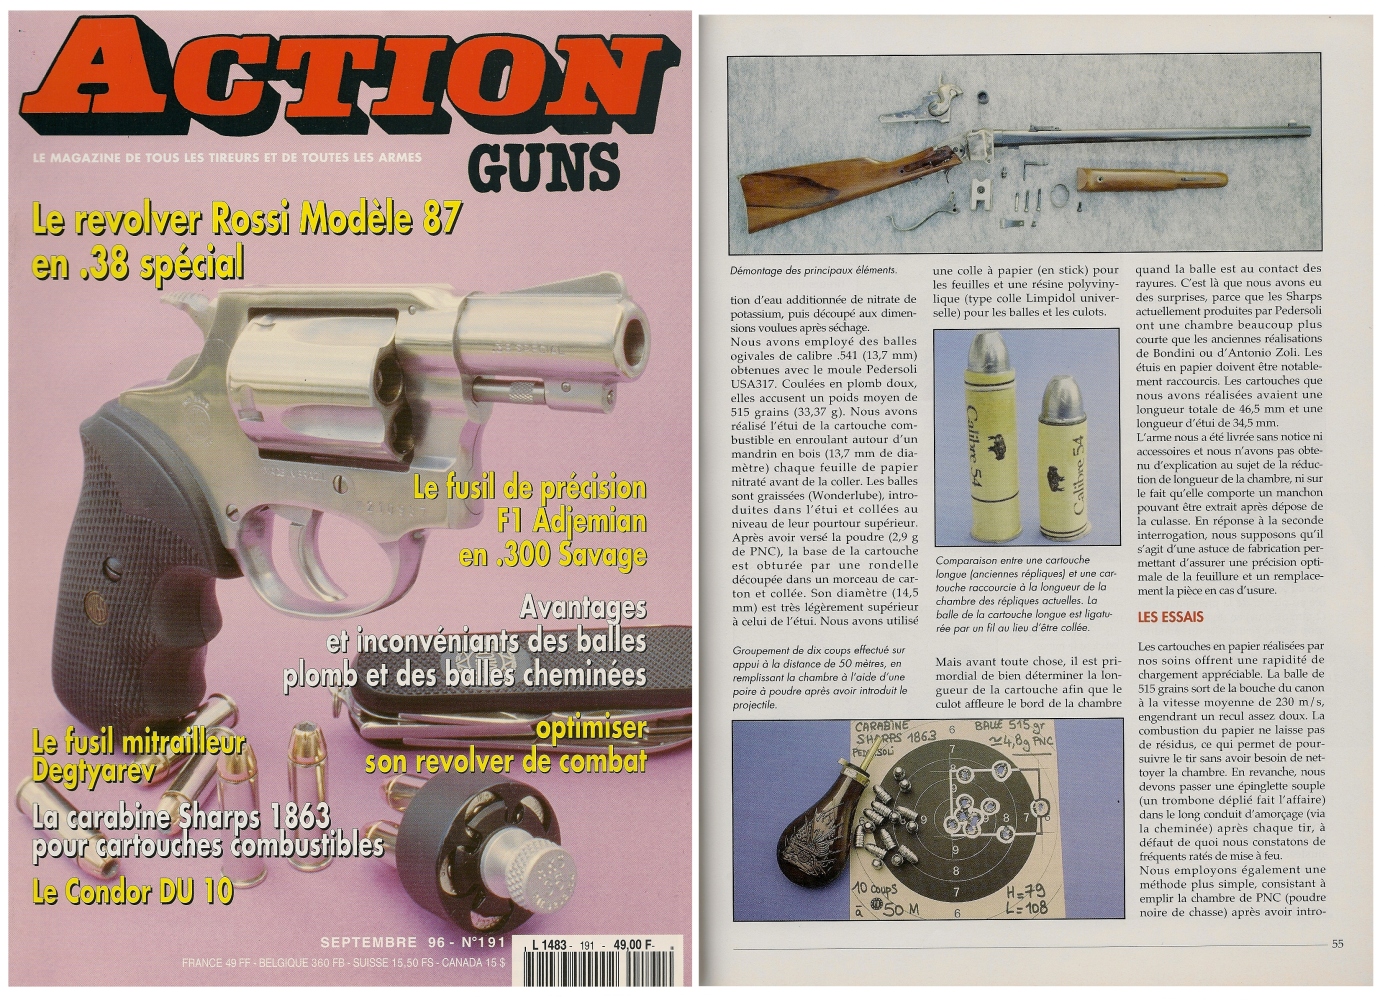 Le banc d’essai de la carabine Sharps modèle 1863 a été publié sur 6 pages dans le magazine Action Guns n° 191 (septembre 1996).